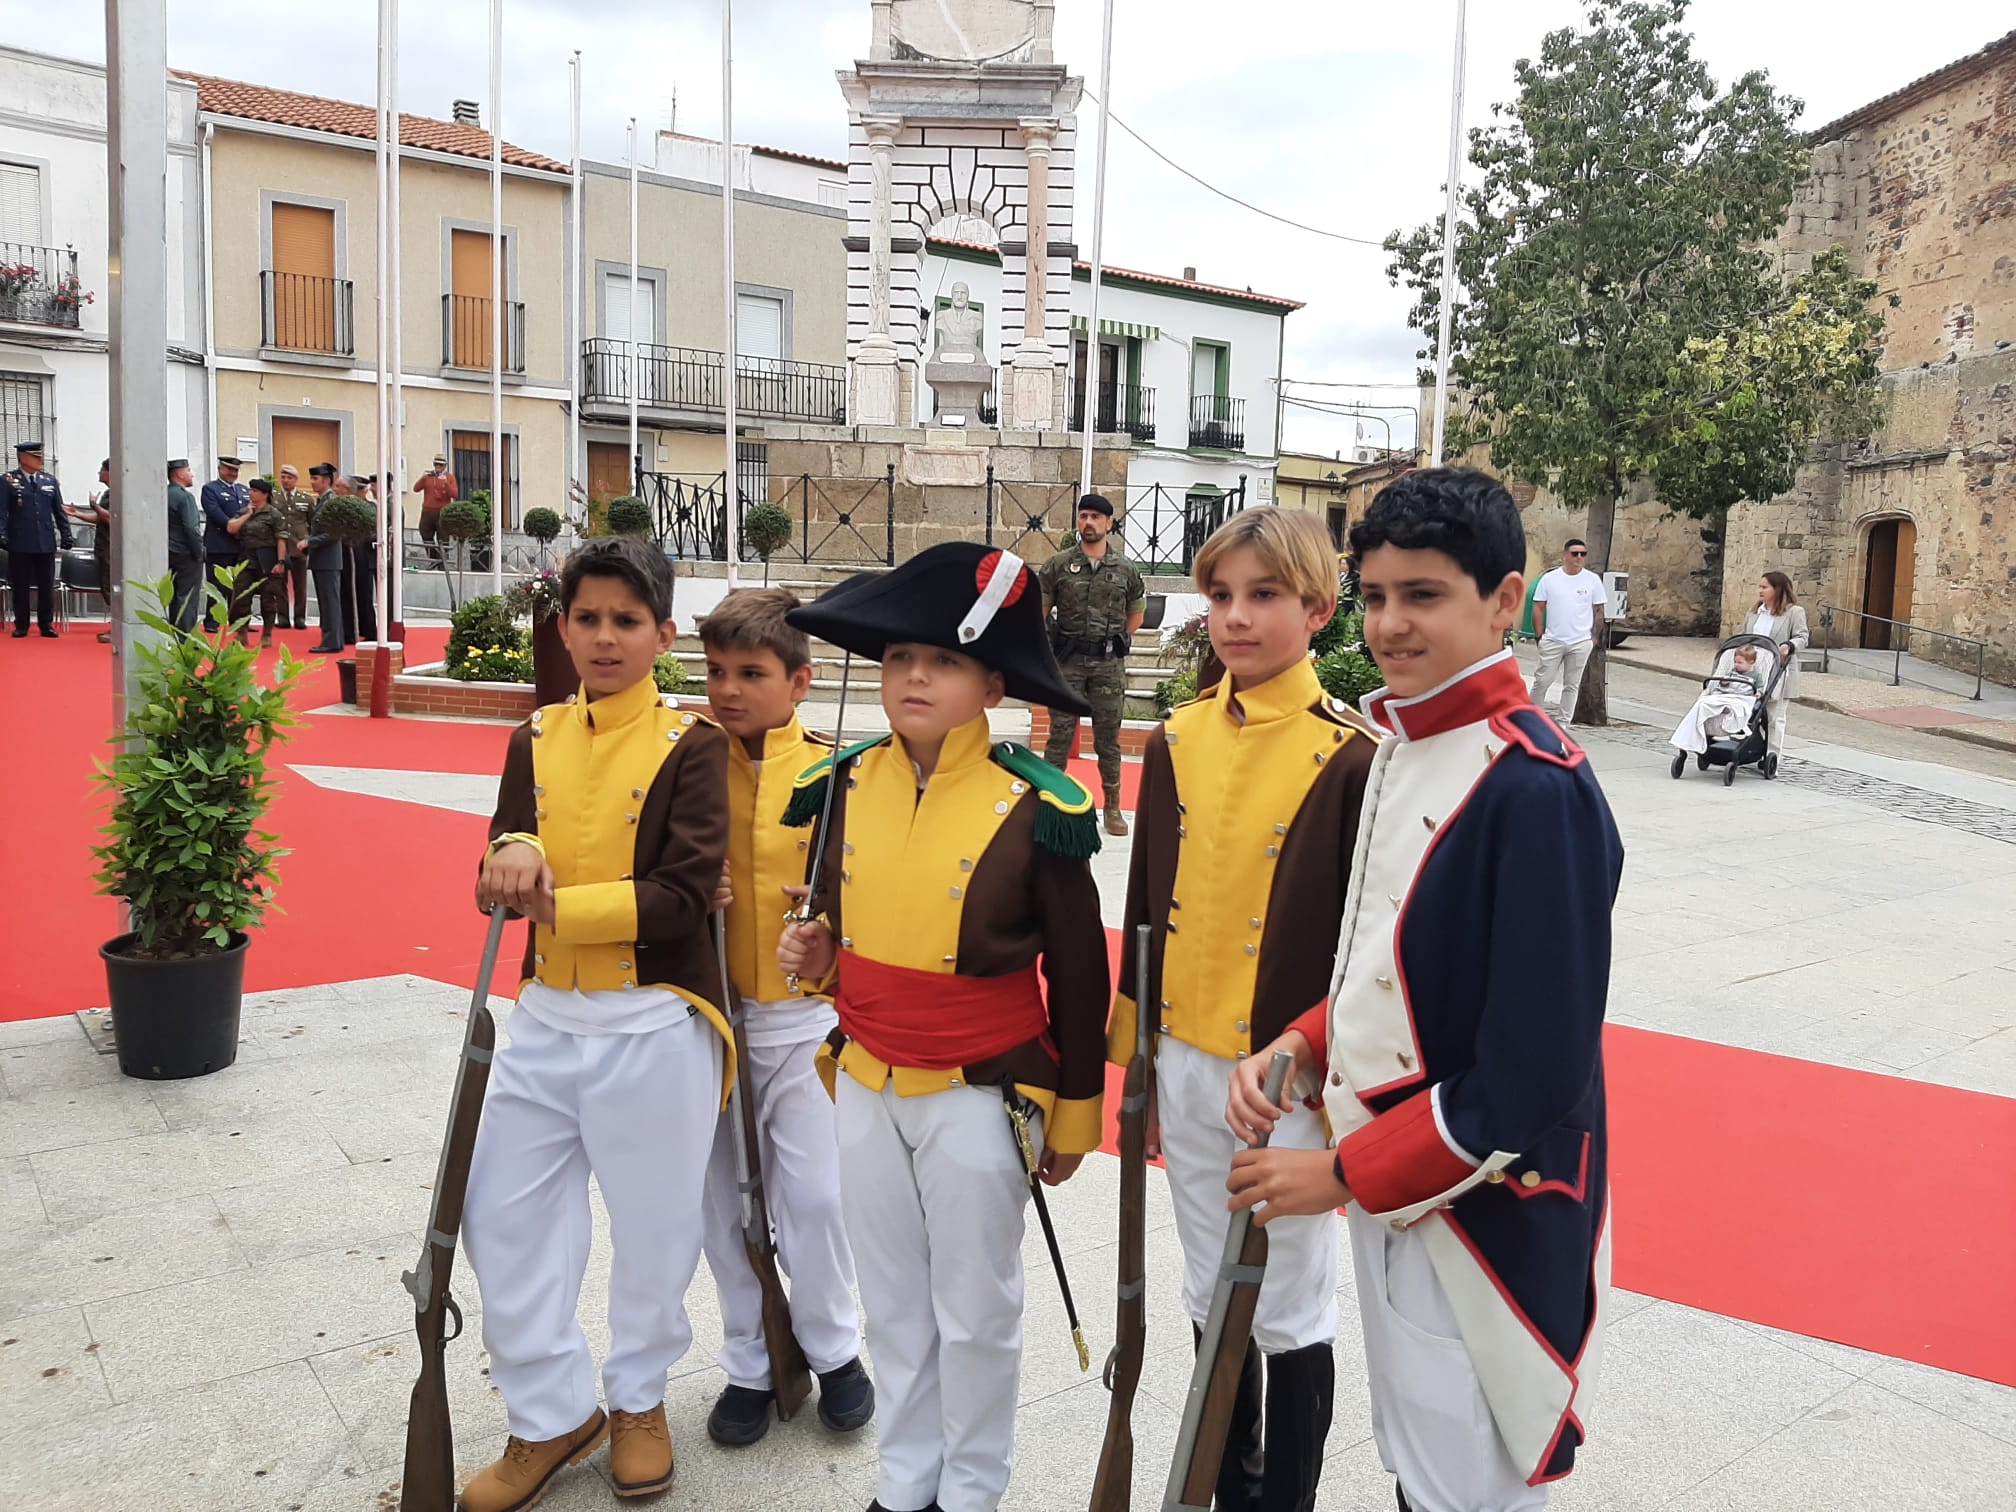 Image 2 of article La Junta subraya el potencial de fiestas de interés turístico como 'La Batalla de la Albuera' para atraer viajeros a Extremadura